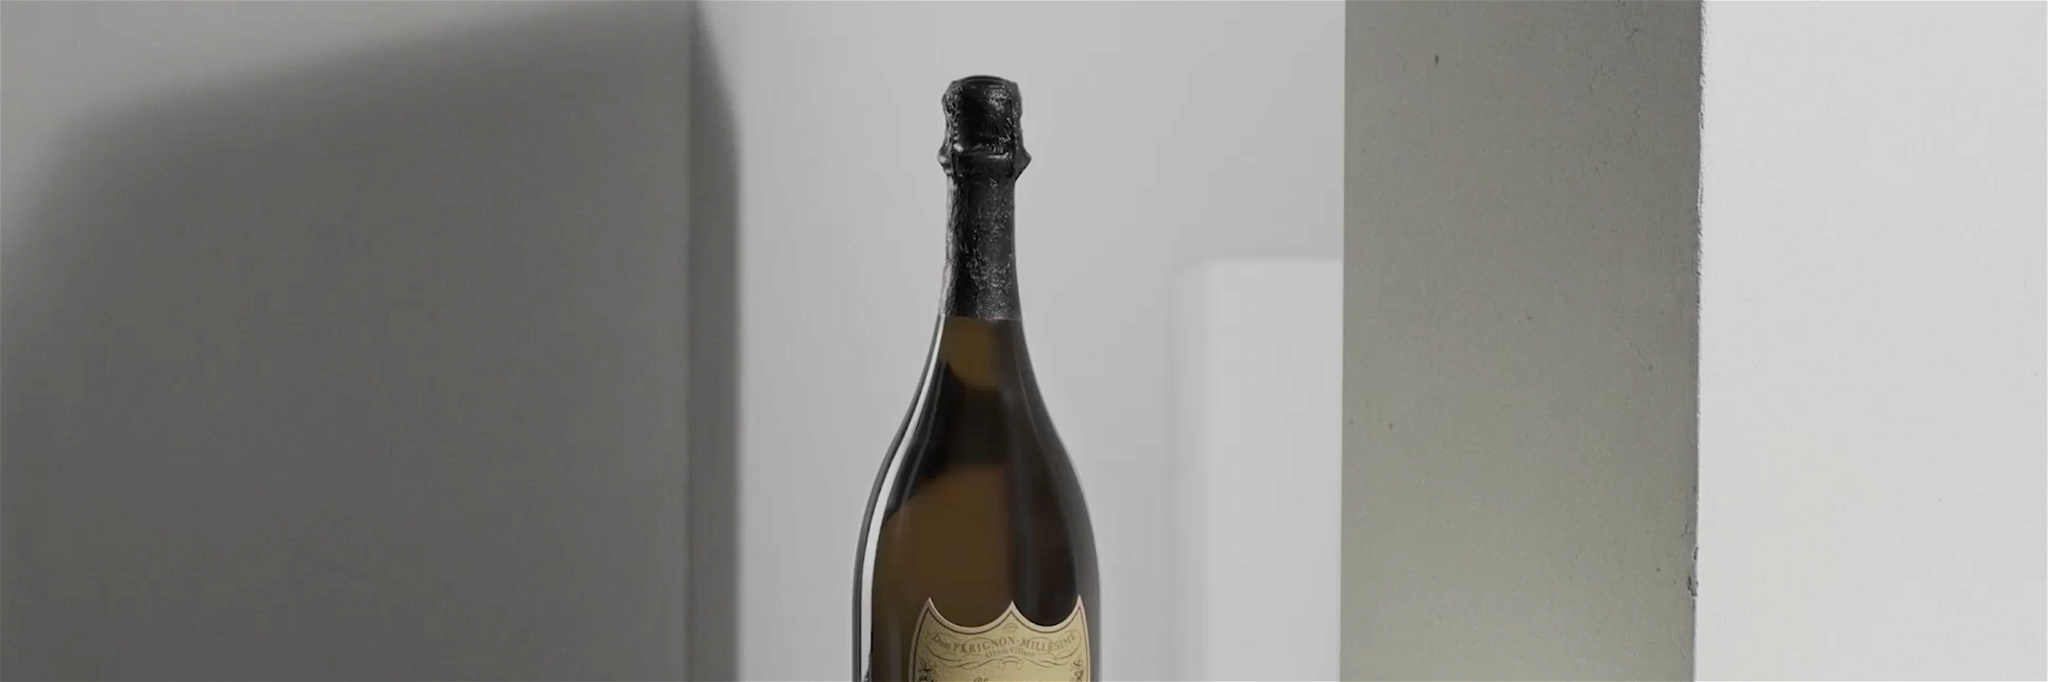 Die Kreation des Jahrgangs 2013 offenbart das Gleichgewicht von Pinot Noir und Chardonnay.